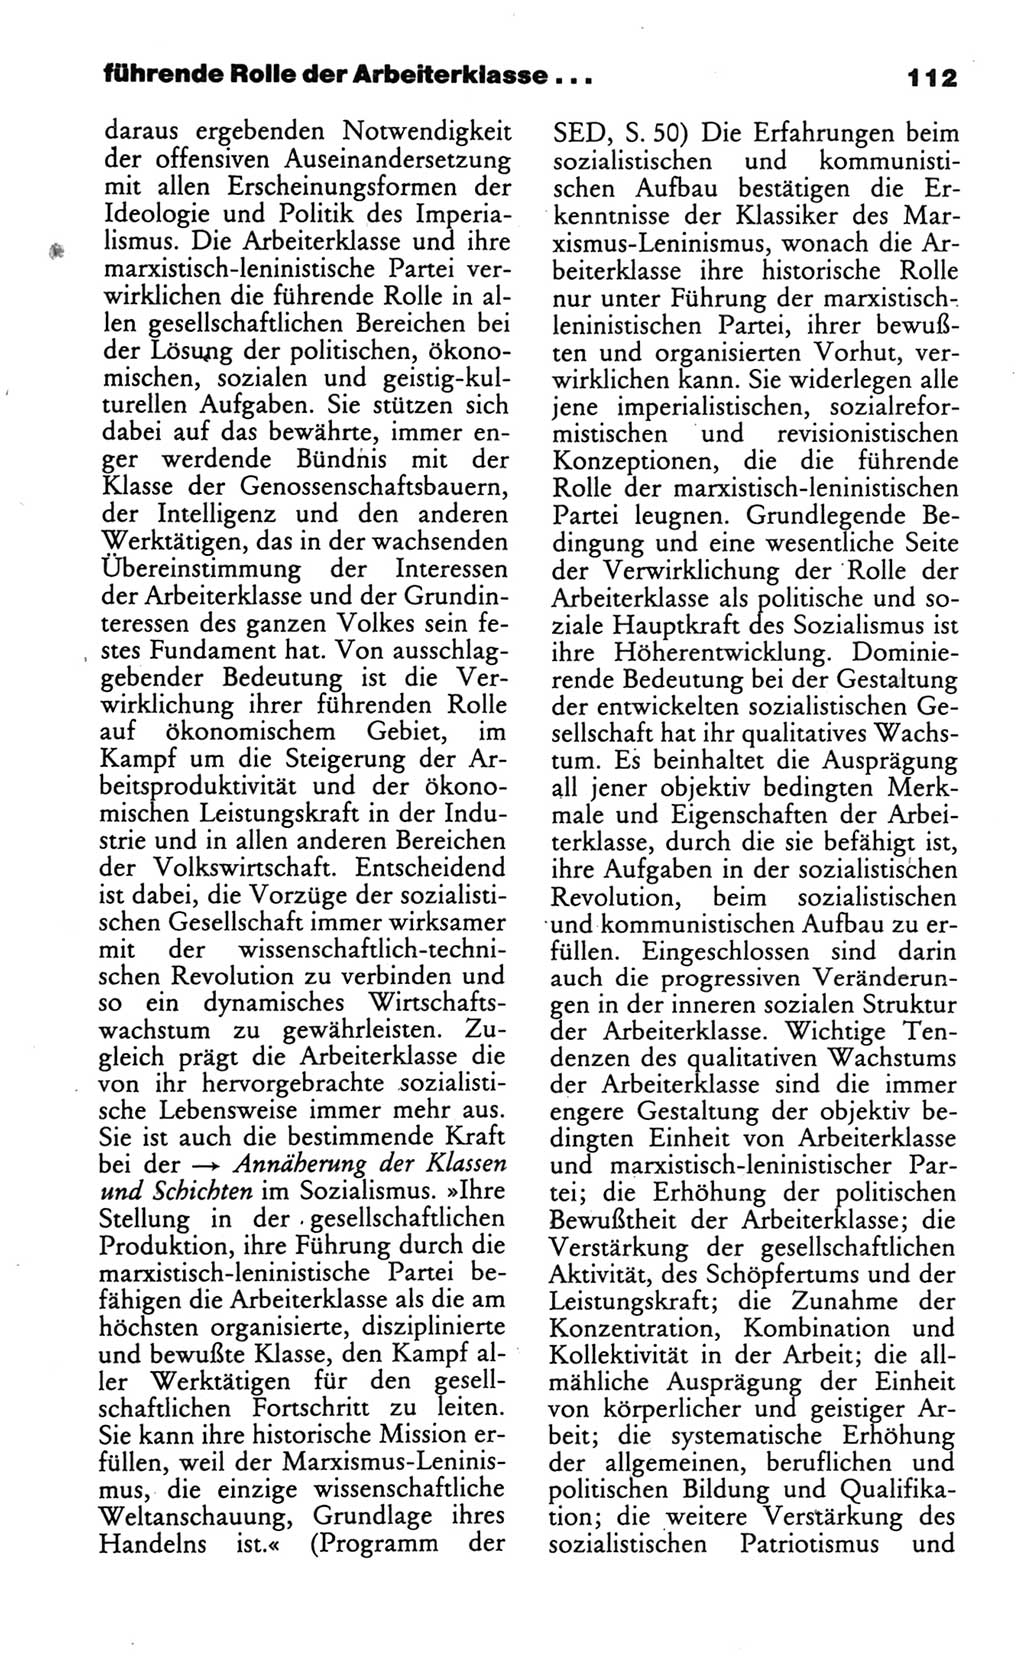 Wörterbuch des wissenschaftlichen Kommunismus [Deutsche Demokratische Republik (DDR)] 1986, Seite 112 (Wb. wiss. Komm. DDR 1986, S. 112)